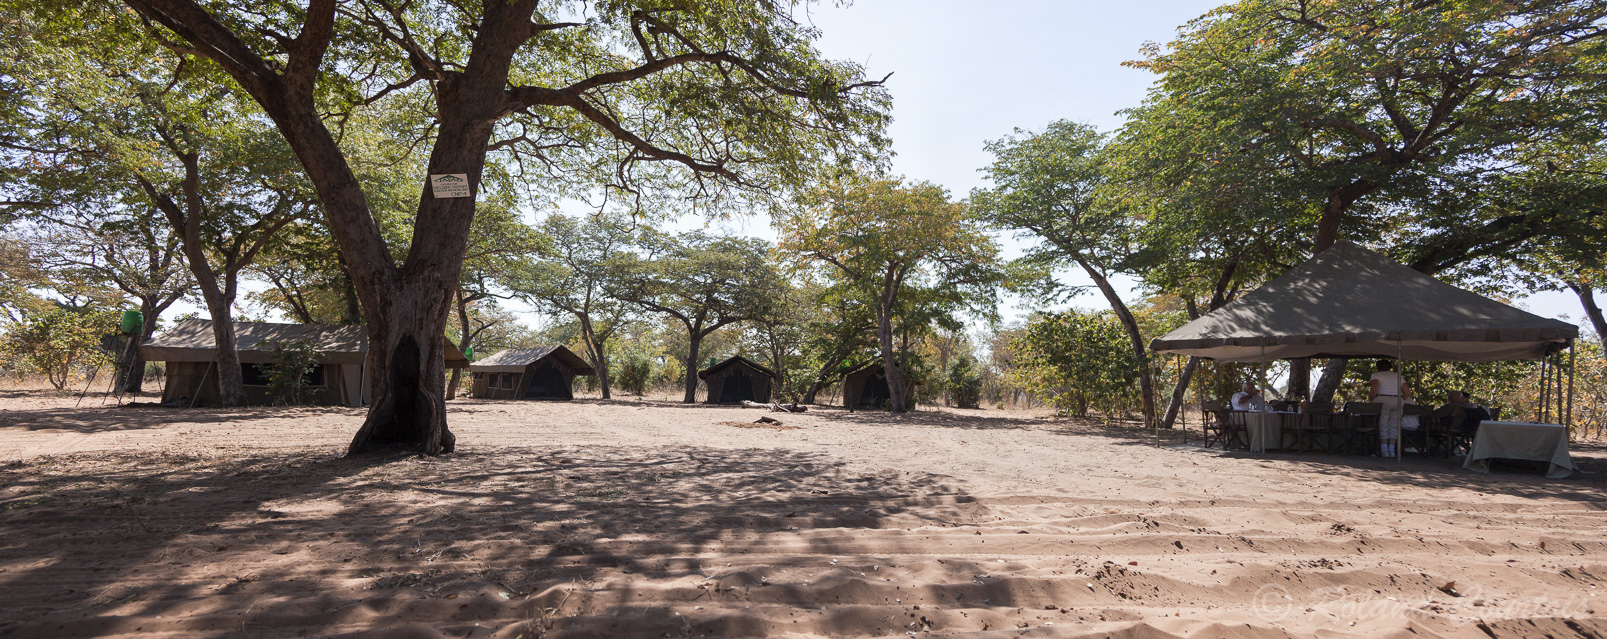 Après un petit vol, voici le camp de tentes de Chobe Under Canvas, point de départ de très belles balades-safaris.